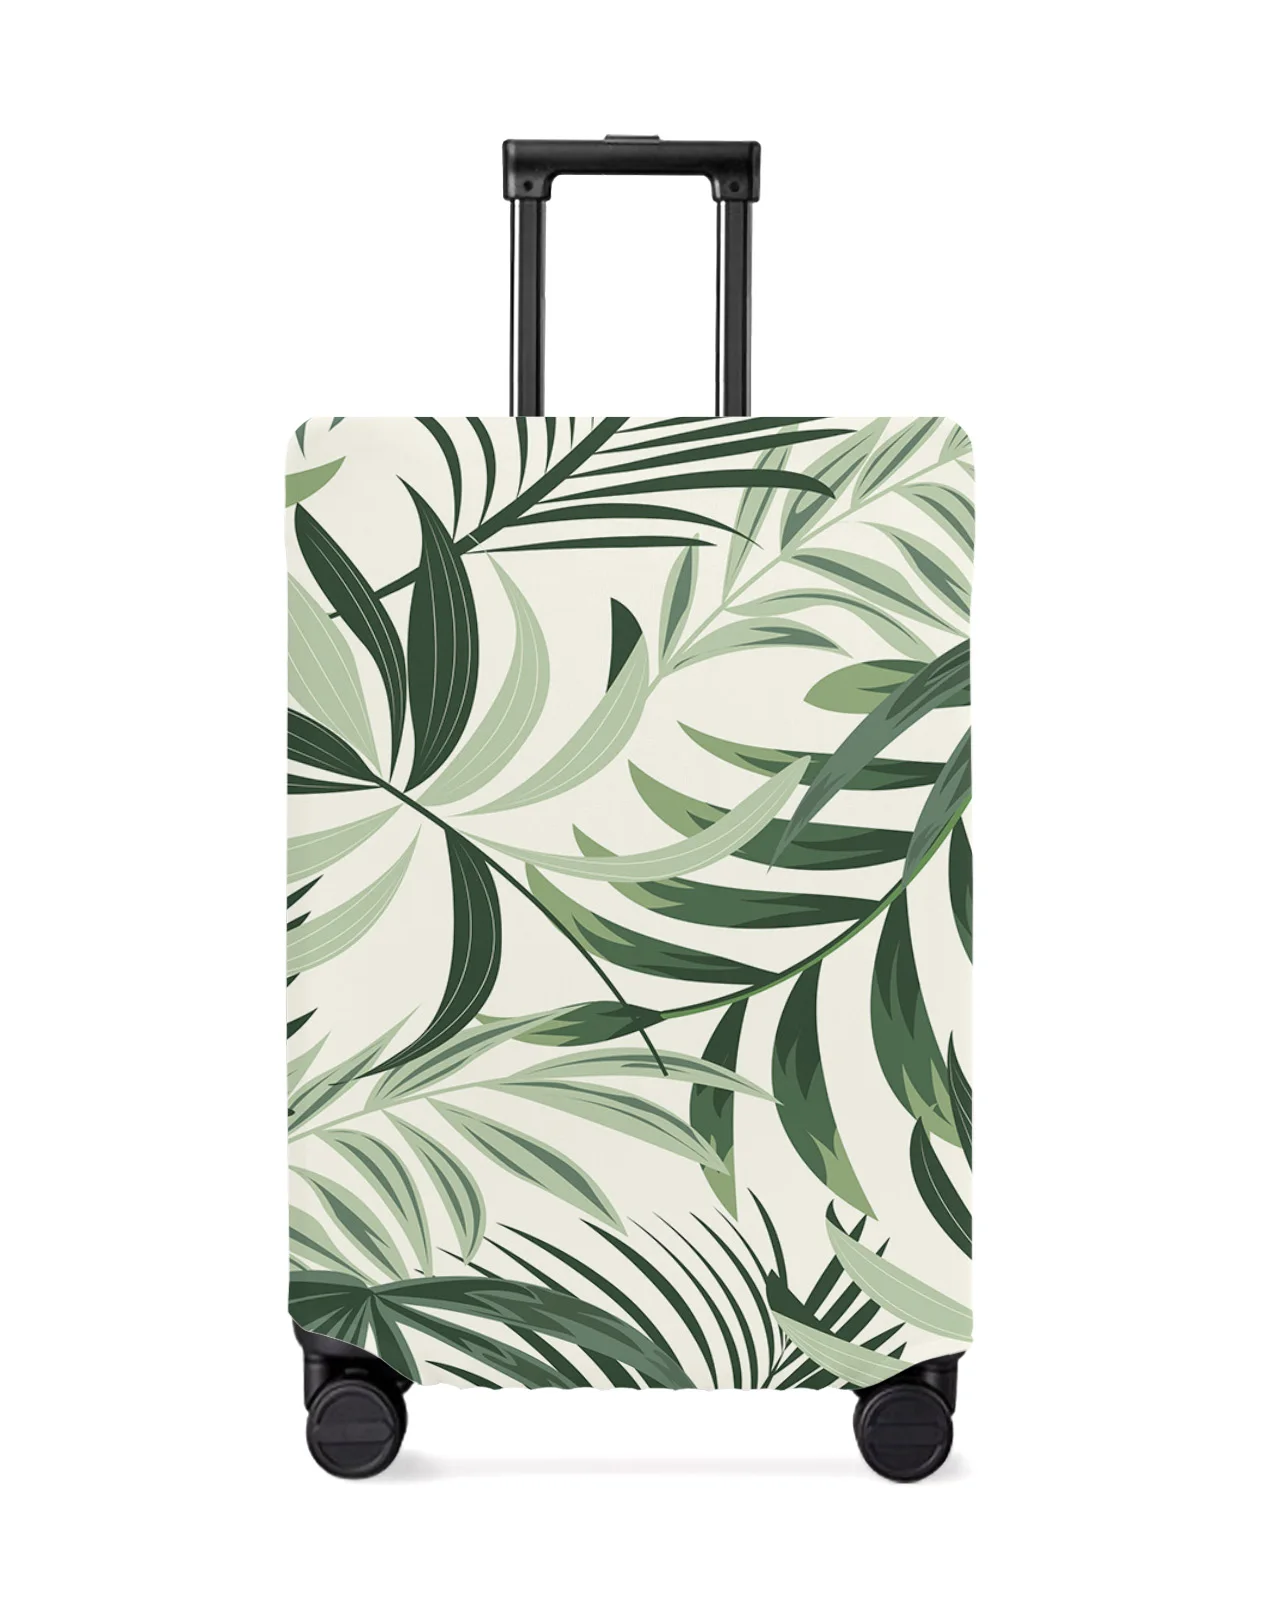 funda-protectora-para-equipaje-de-viaje-funda-elastica-antipolvo-con-hojas-verdes-y-plantas-tropicales-accesorios-de-viaje